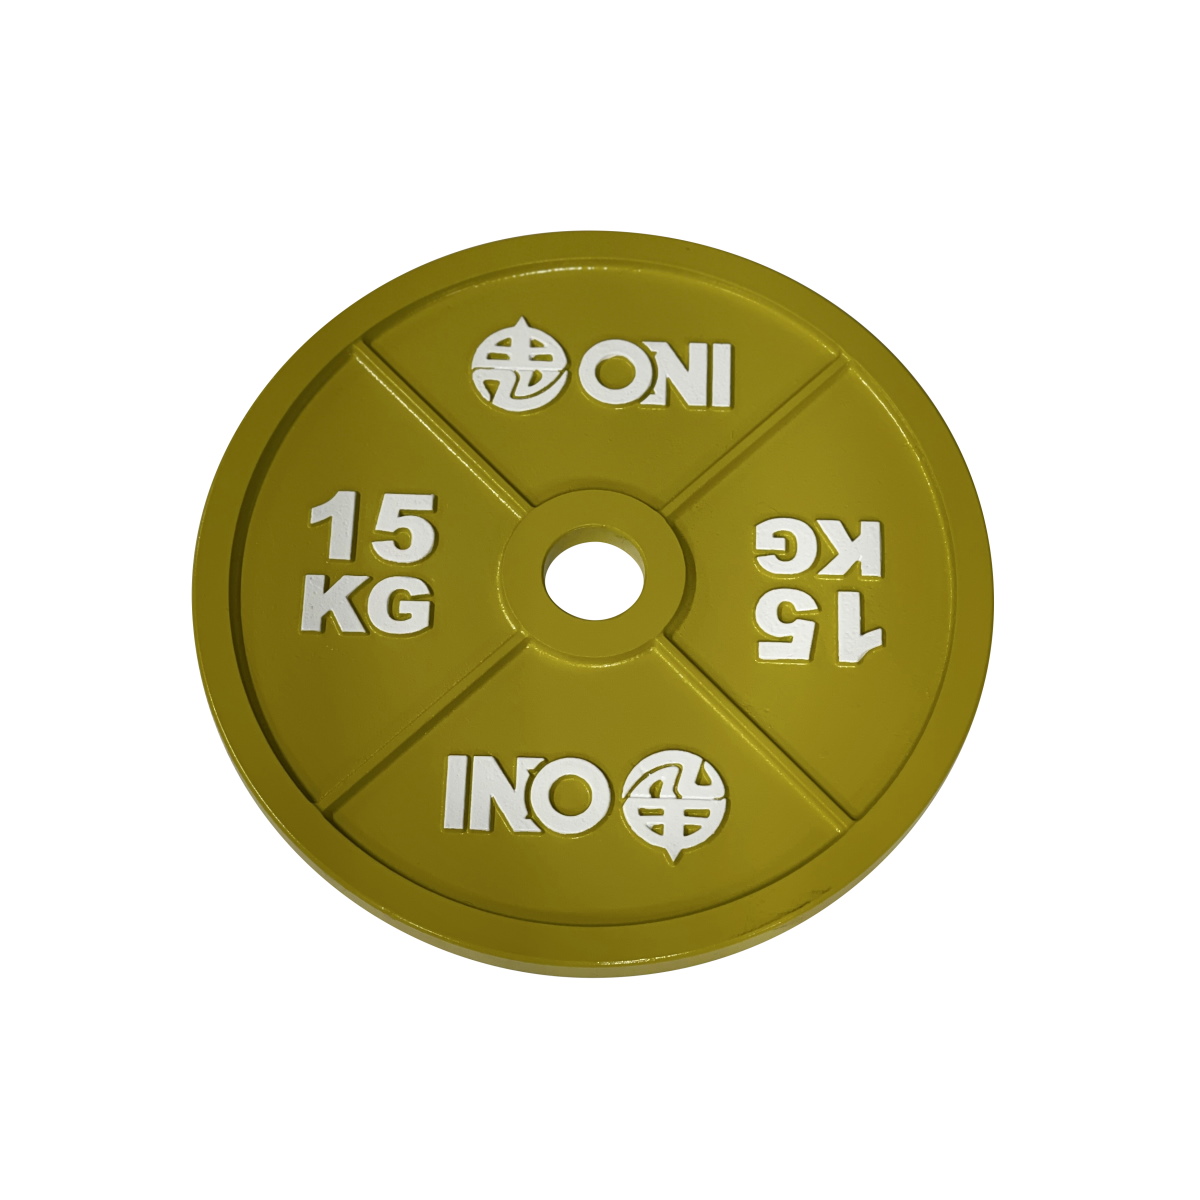 IVANKO 今月限定 特別大特価 BULL ELEIKO ROGUEではありません ONI スチールプレート 15kg パワーリフティング キャリブレート アイアン 2枚1組 [ギフト/プレゼント/ご褒美]